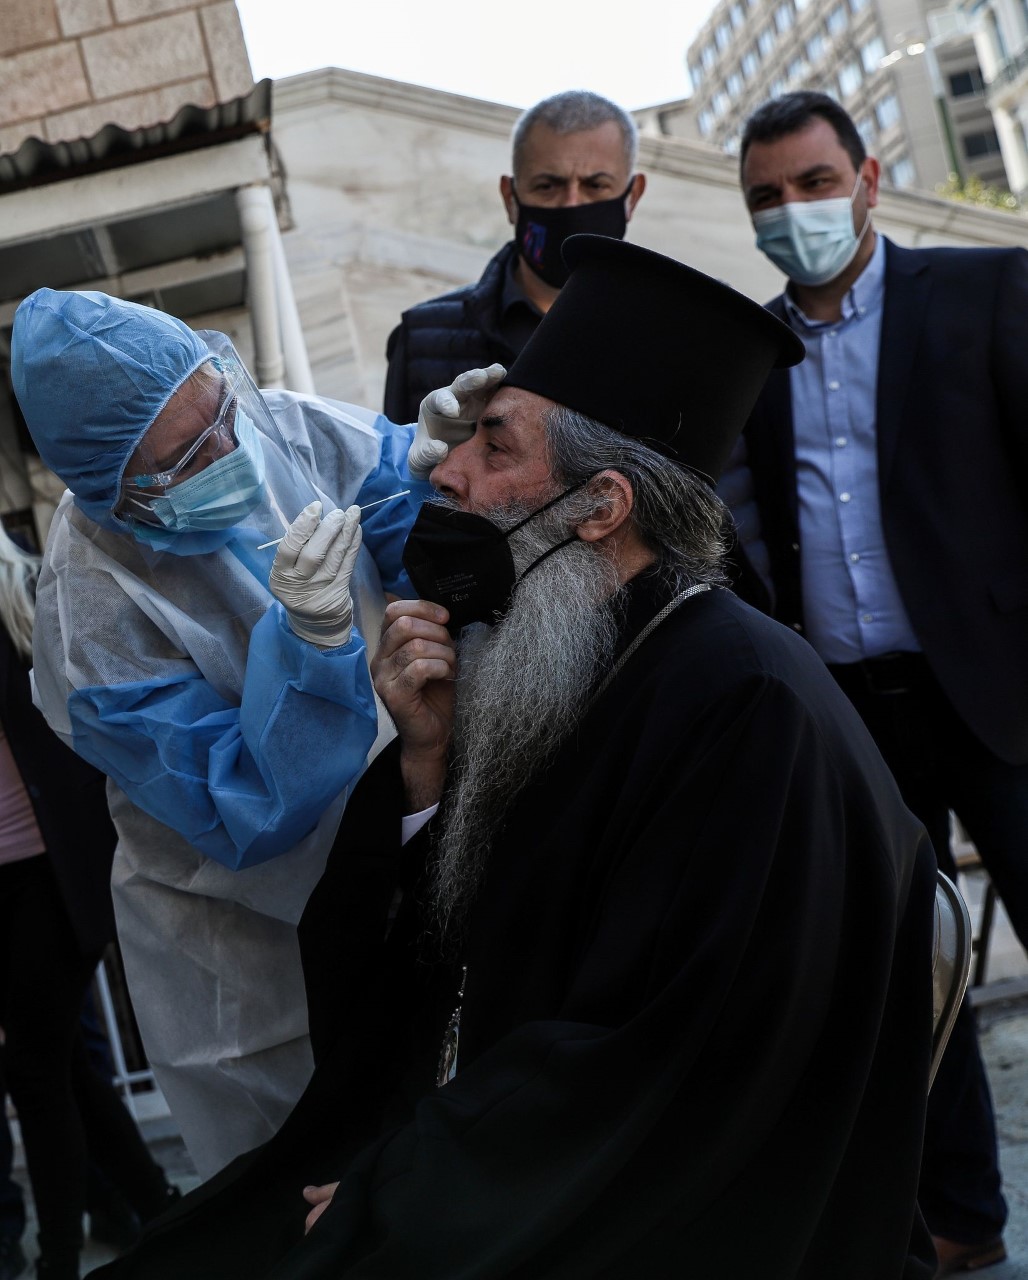 Δήμος Πειραιά: Rapid test  στους κληρικούς της Ιεράς Μητροπόλεως Πειραιώς